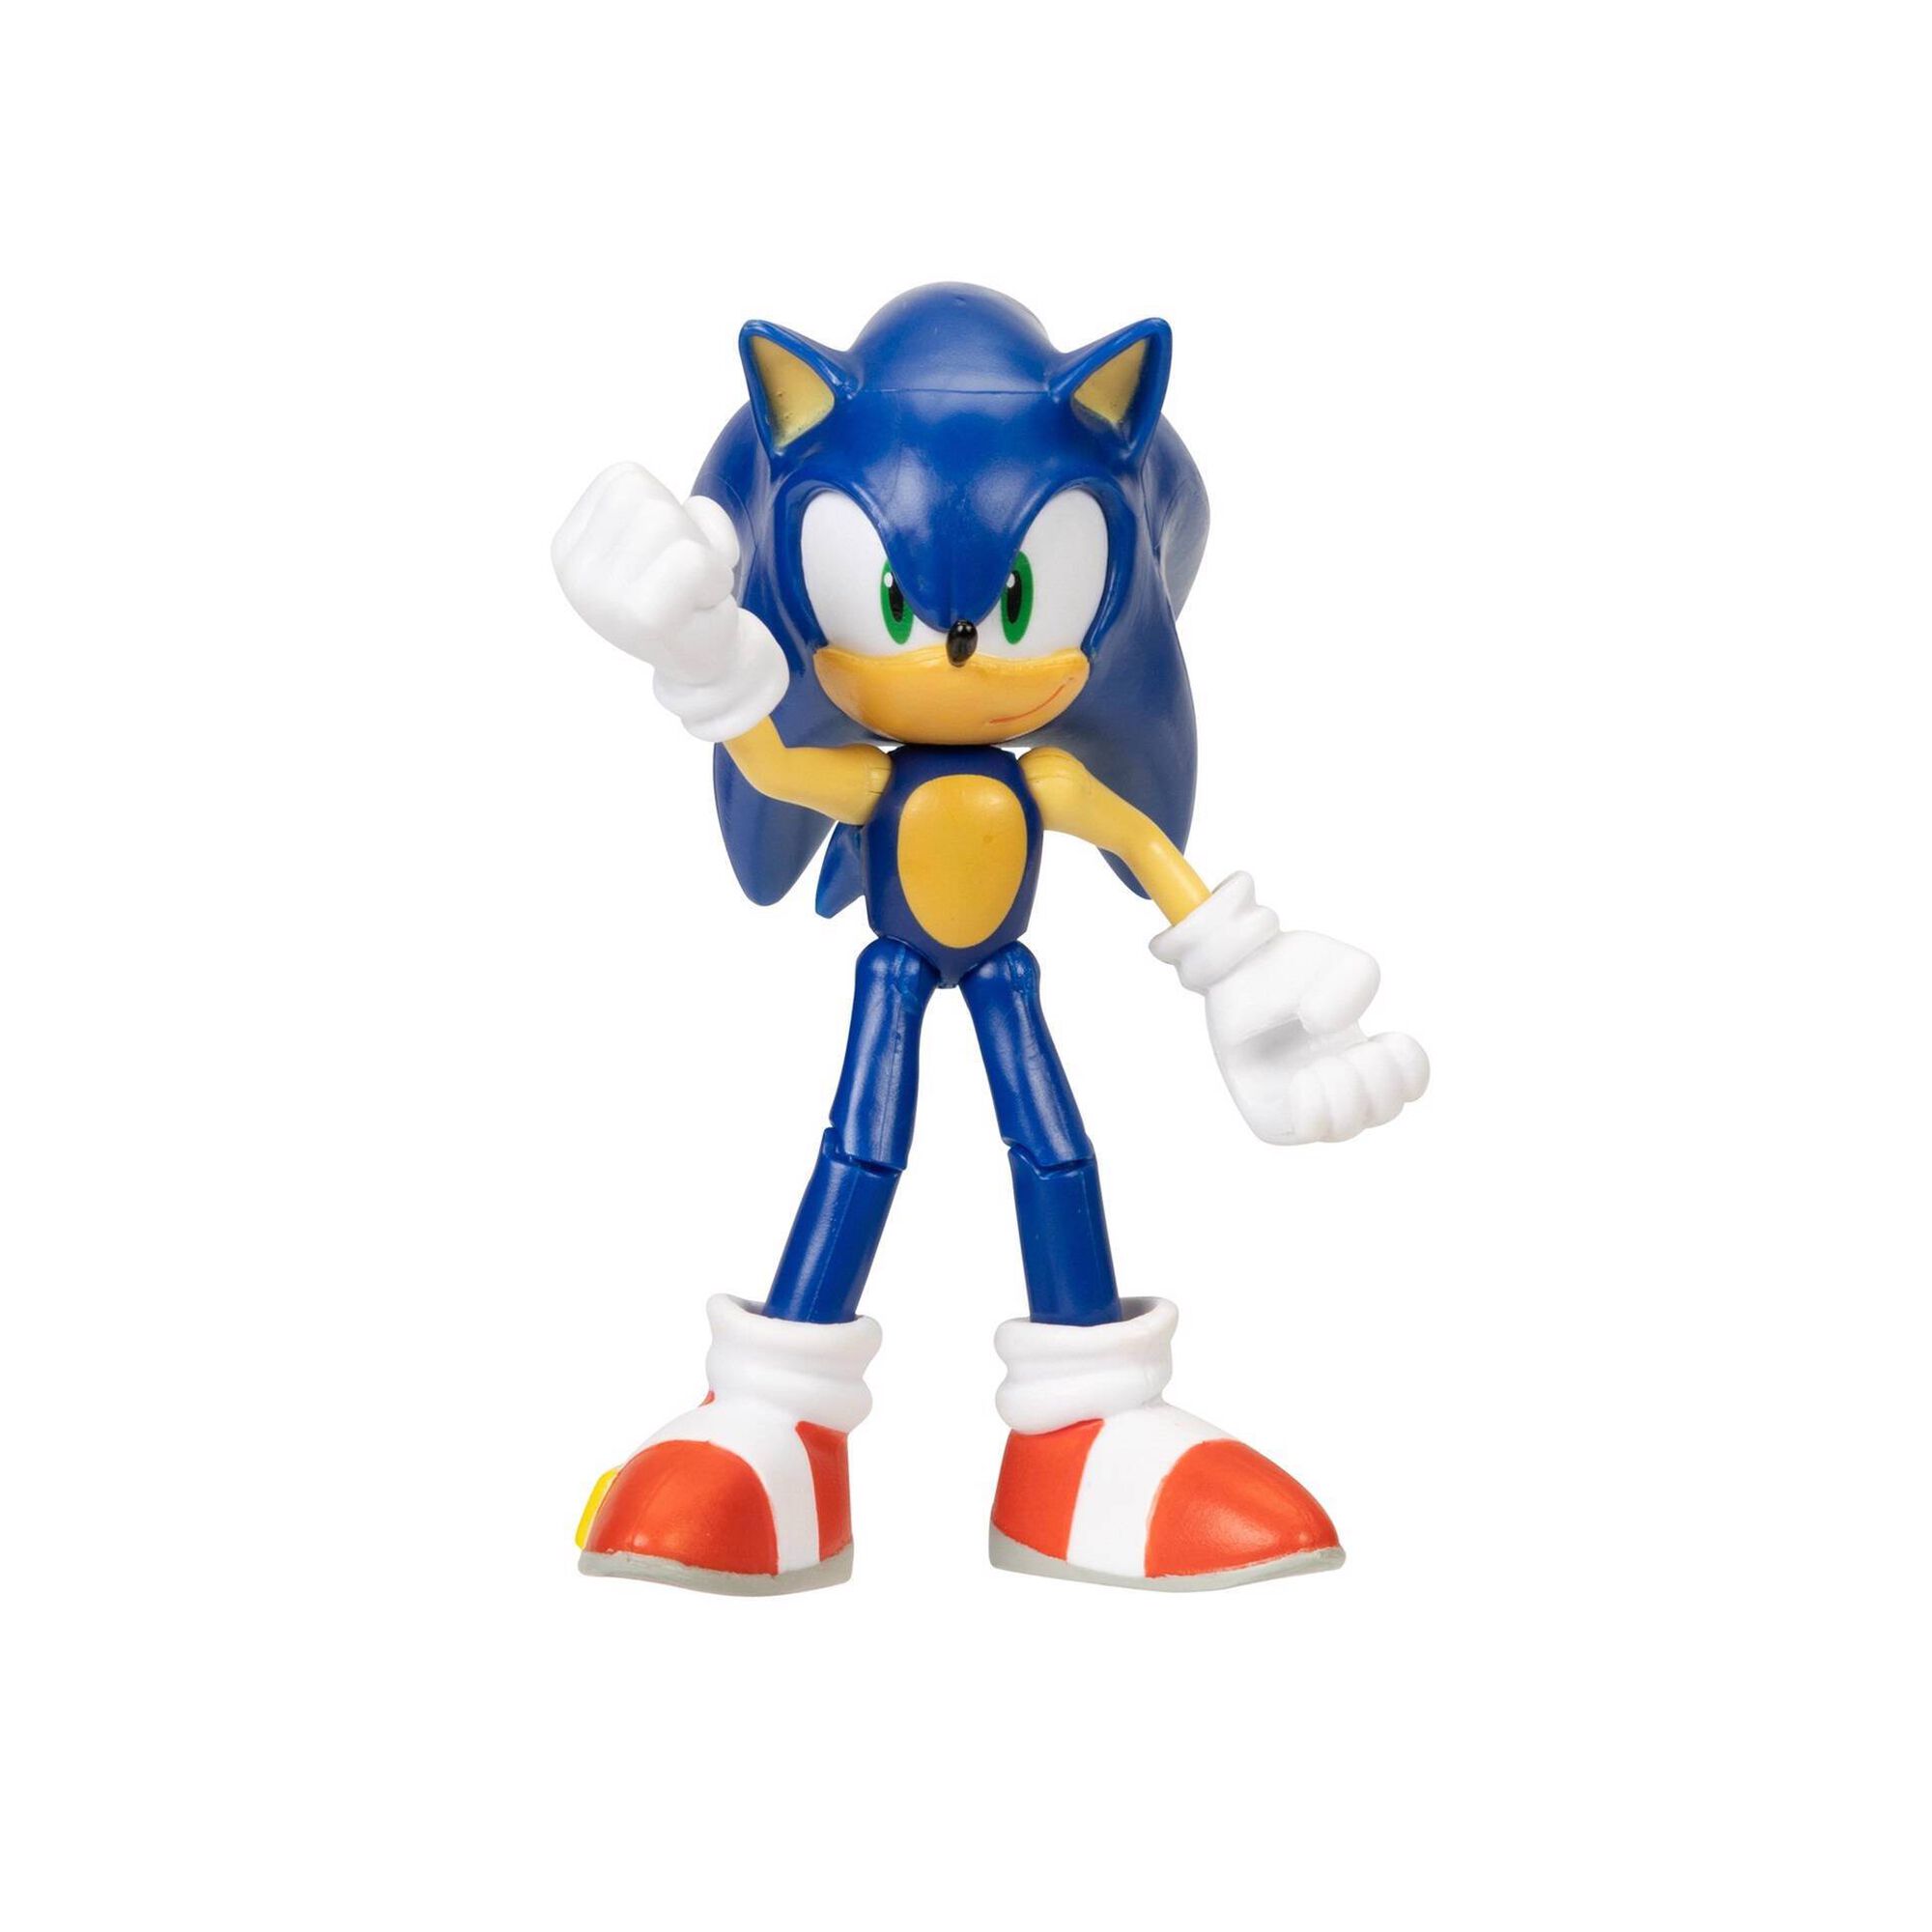 Sonic the Hedgehog (aberto) - Arte em Miniaturas